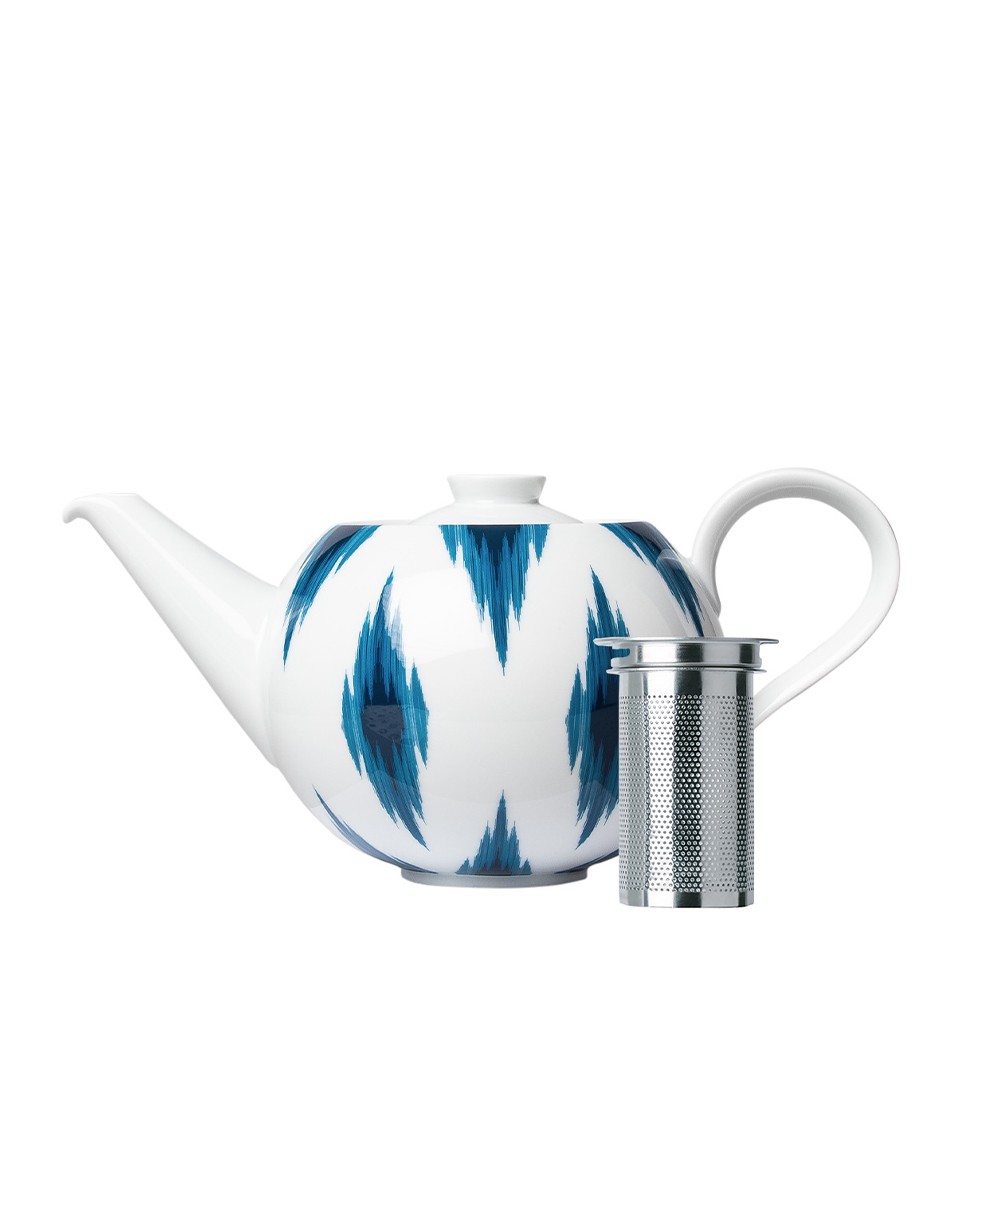 Produktbild, das die Teekanne mit Edelstahlsieb der Paraiso-Serie von Sieger by Fürstenberg zeigt